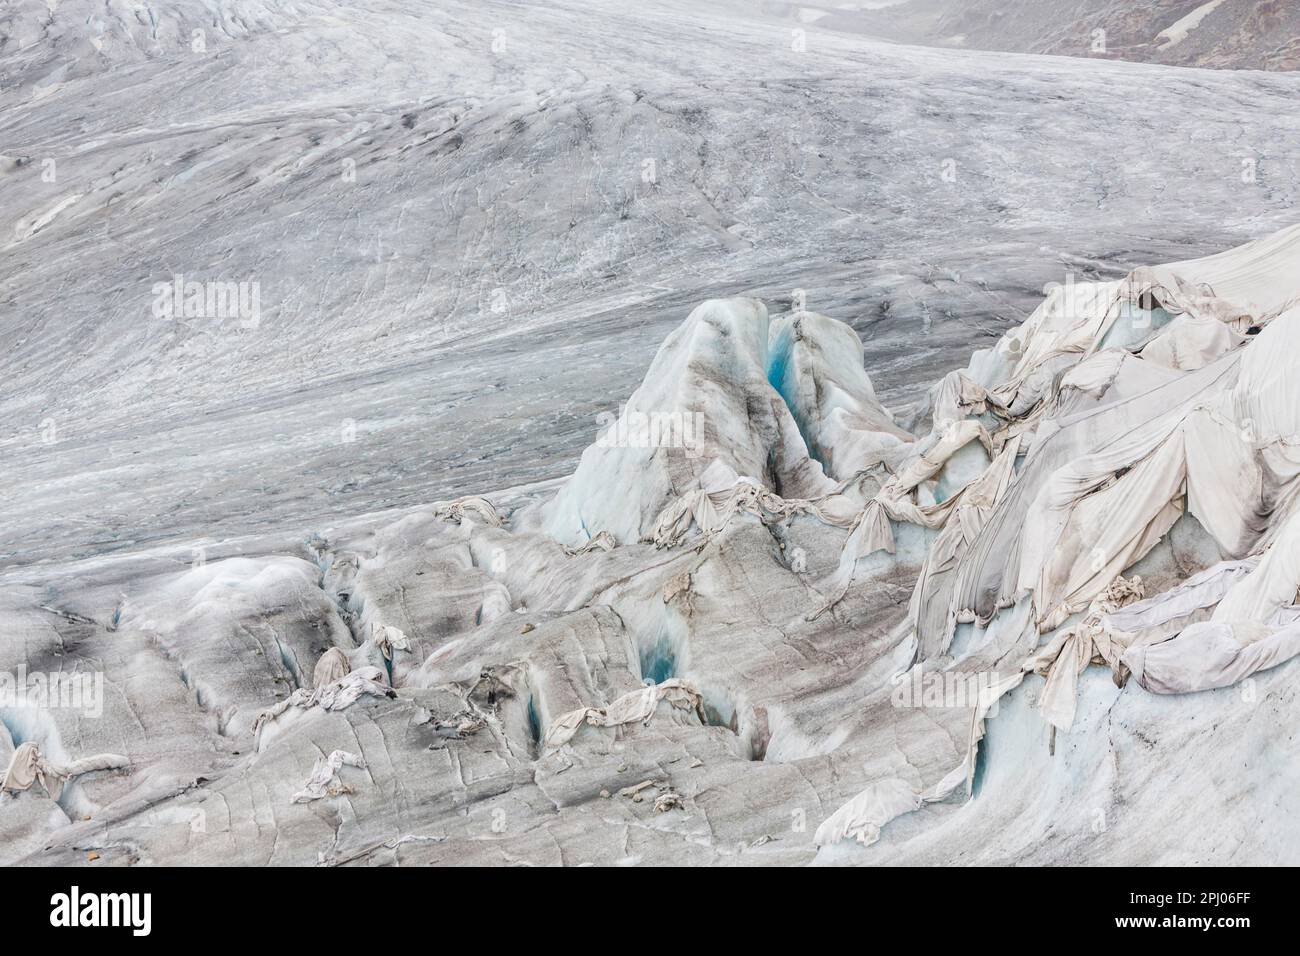 Rhone-Gletscher in den Alpen von Uri, Landschaft, ist der Gletscher teilweise mit Laken verbunden, um den Schmelzprozess im Laufe des Klimas zu verlangsamen Stockfoto